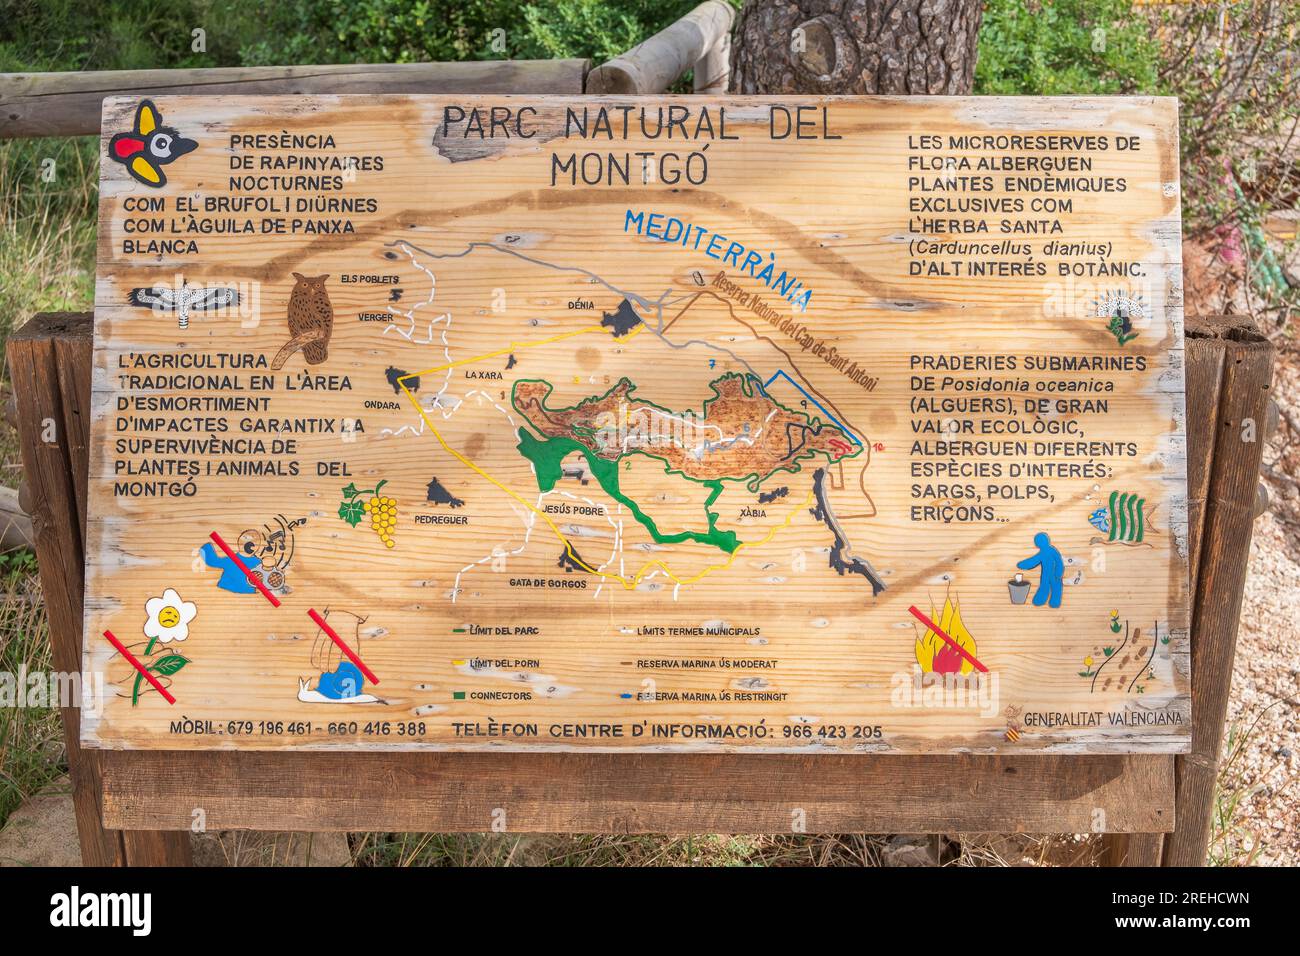 Hinweisschild im Naturpark Montgo (Parc Natural del Montgo) *** iscrizione nel Parco naturale di Montgo (Parc Natural del Montgo) Foto Stock